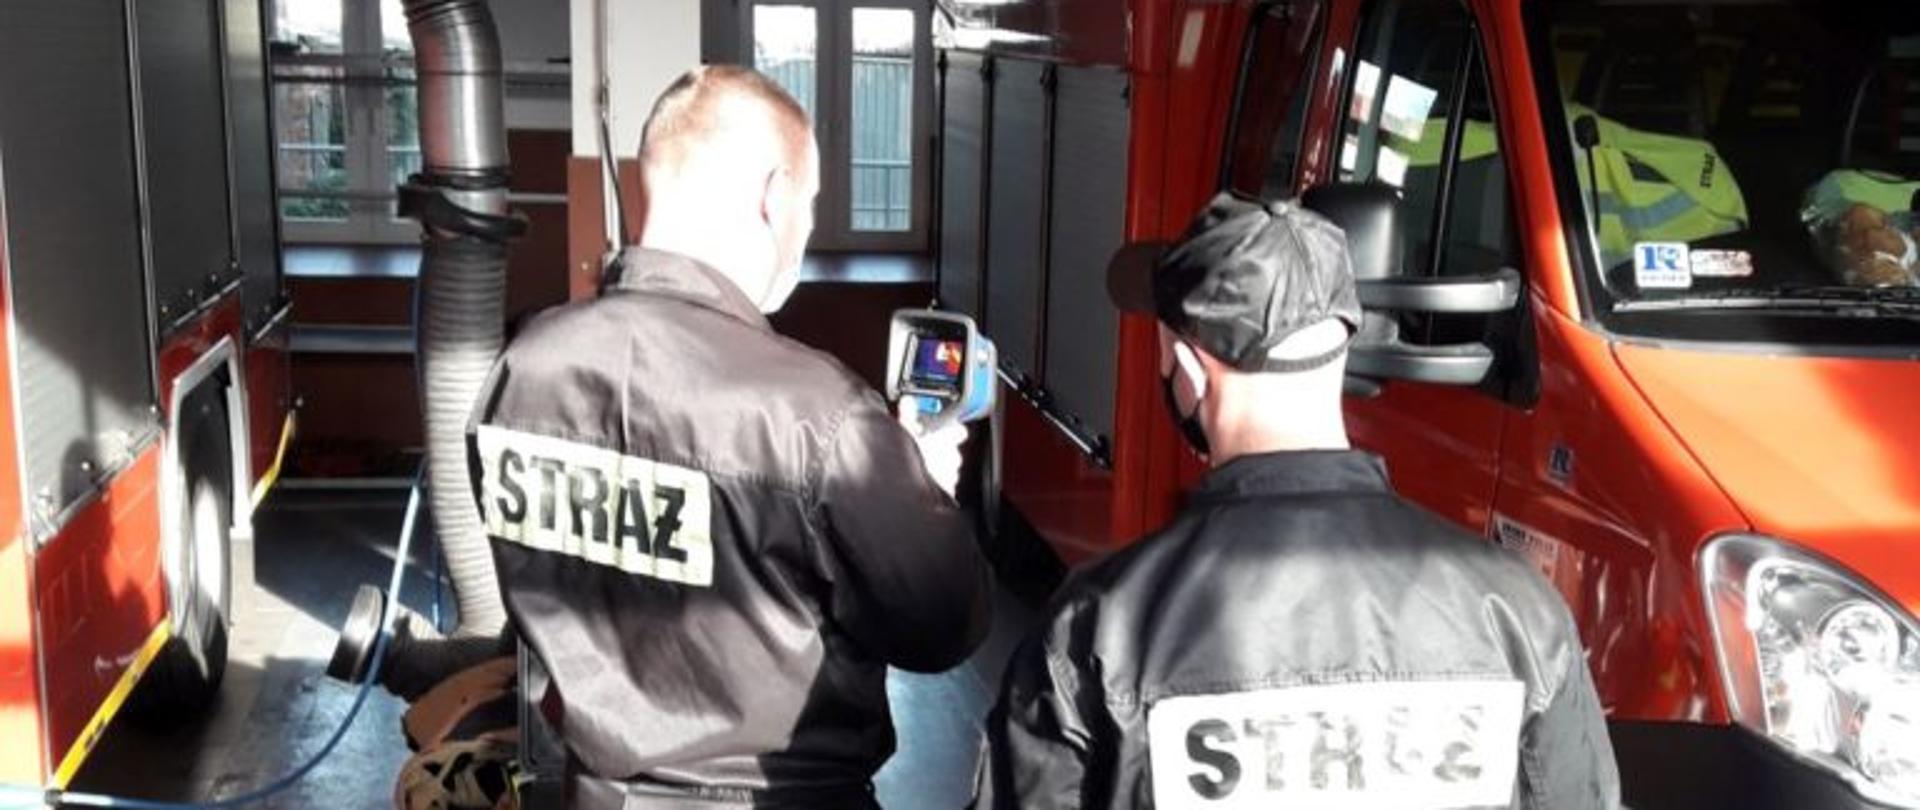 Dwóch strażaków z jednostki ratowniczo gaśniczej w Lubsku ubranych w czarne ubrania koszarowe testuje nową kamerę termowizyjną w garażu jednostki. Na zdjęciu widać dwa czerwone samochody strażackie zaparkowane w garażu.